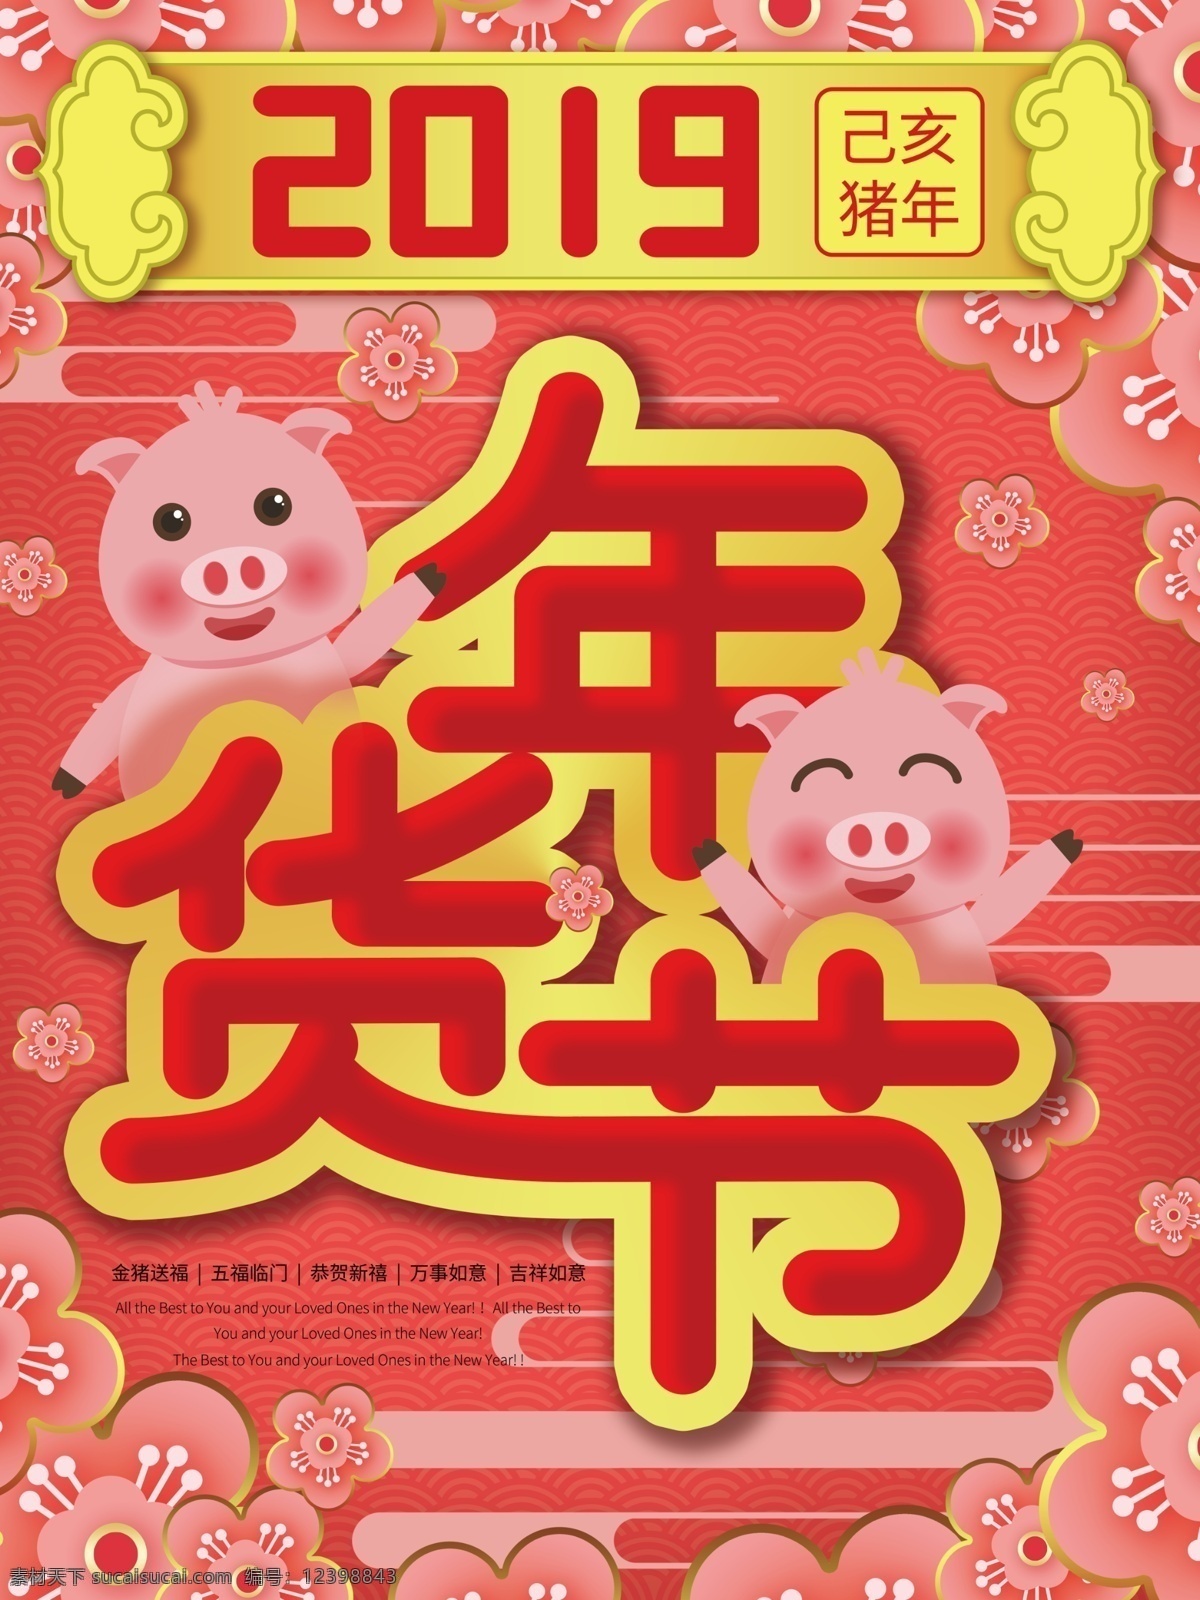 原创 卡通 喜庆 年货 节 海报 红色 卡通猪 年货节